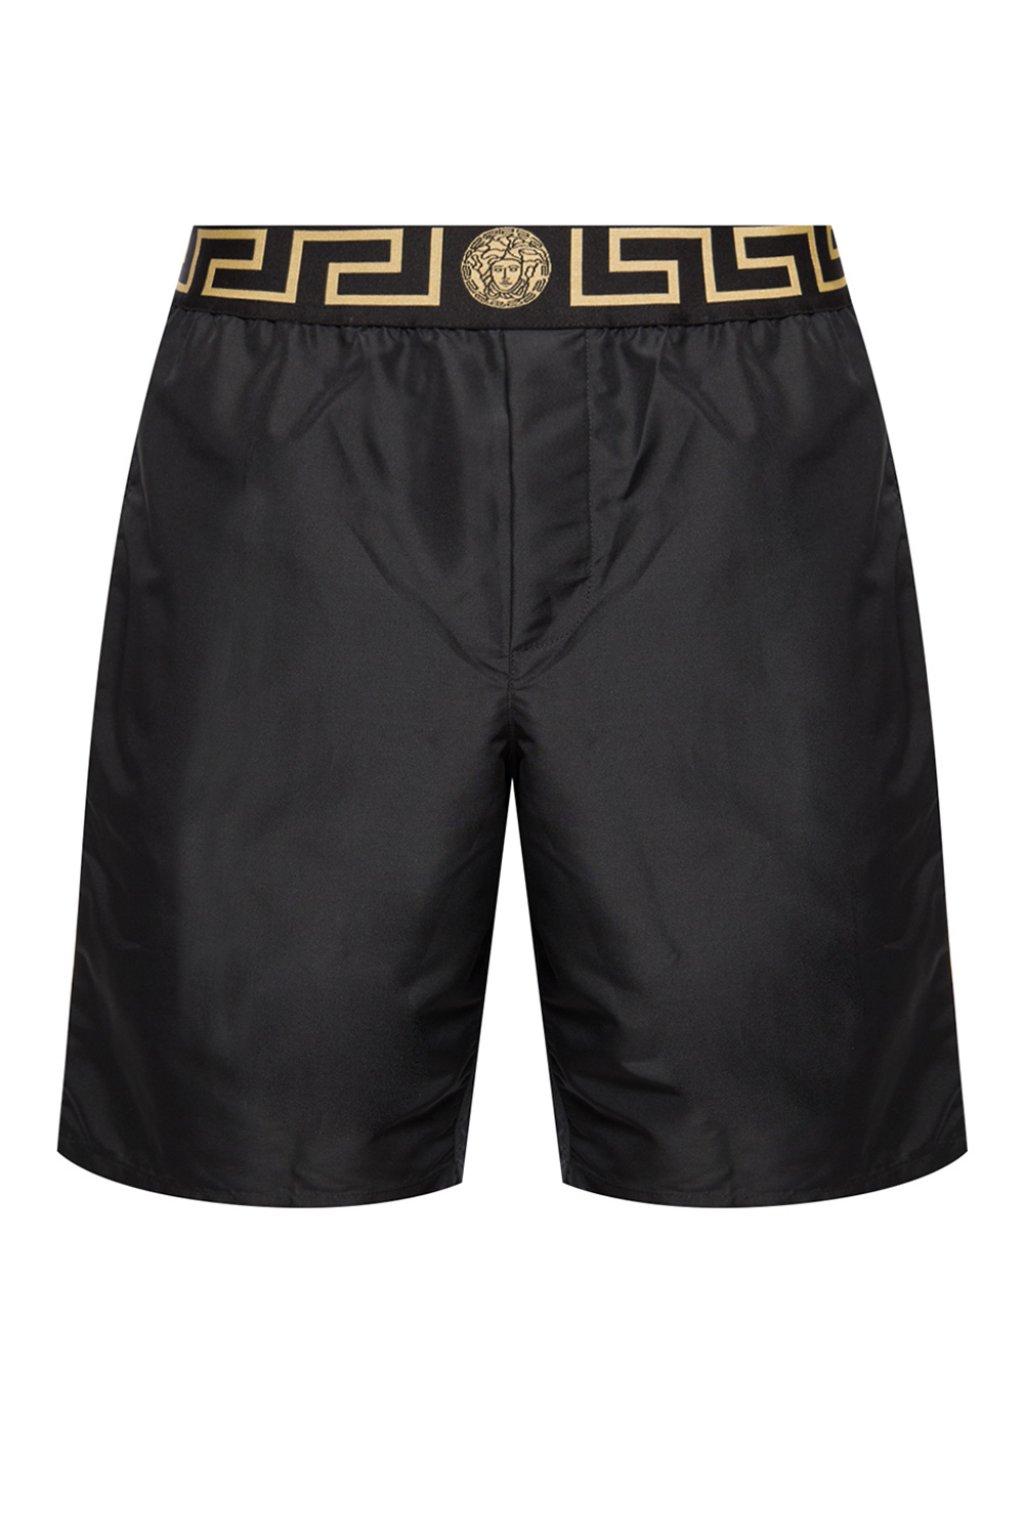 versace board shorts